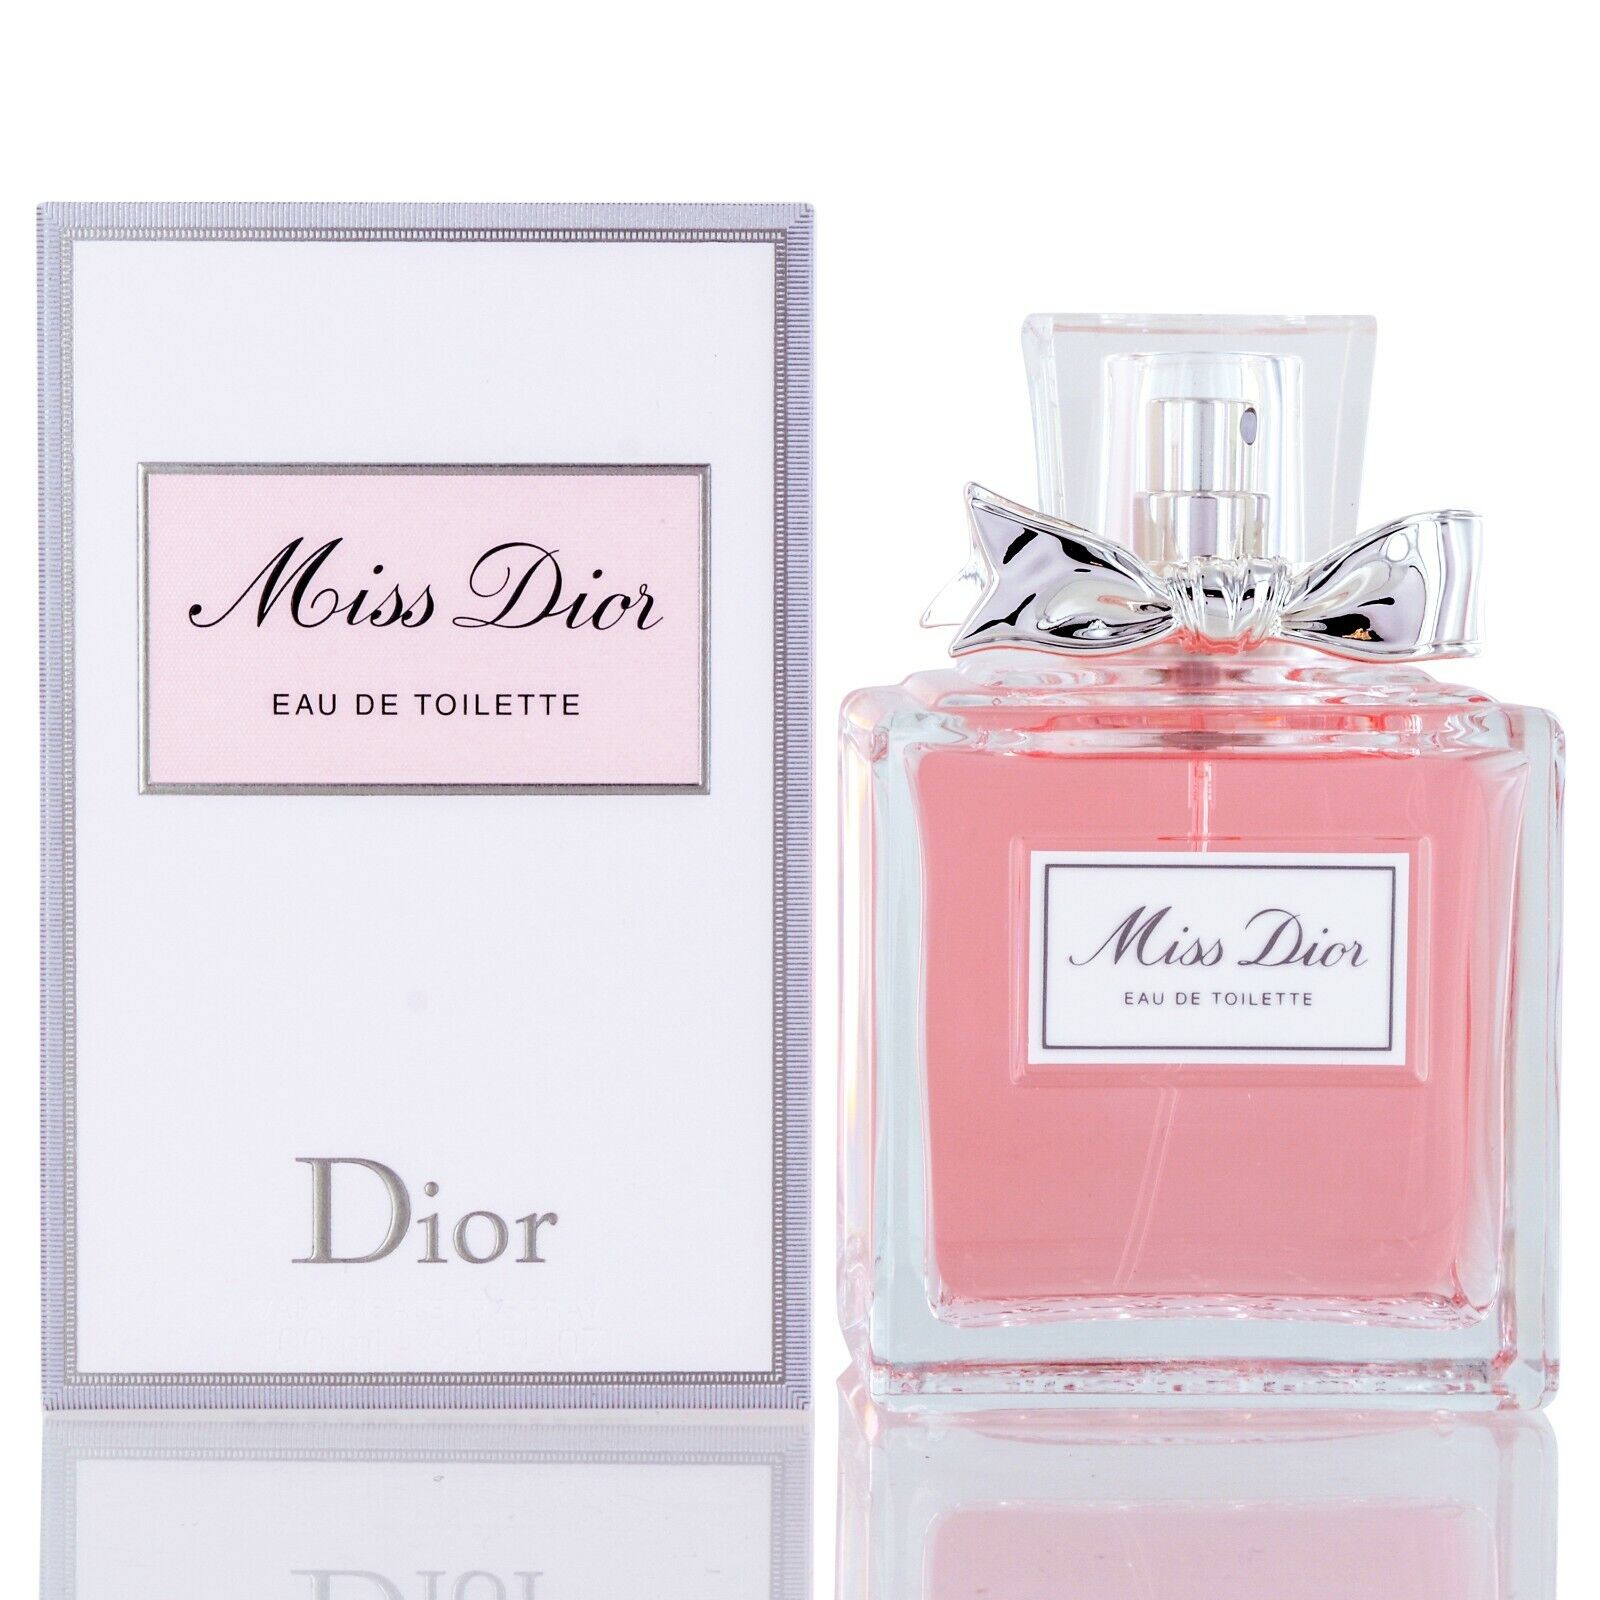 | Takreem Miss Dior EDT Perfume for Women| - #sho| Takreem Miss Dior EDT Perfume for Women|p_name#| Takreem Miss Dior EDT Perfume for Women|PerfumeDiorTakreem.joMiss Dior EDTMenEDT100mlTakreem Miss Dior EDT Perfume for Women